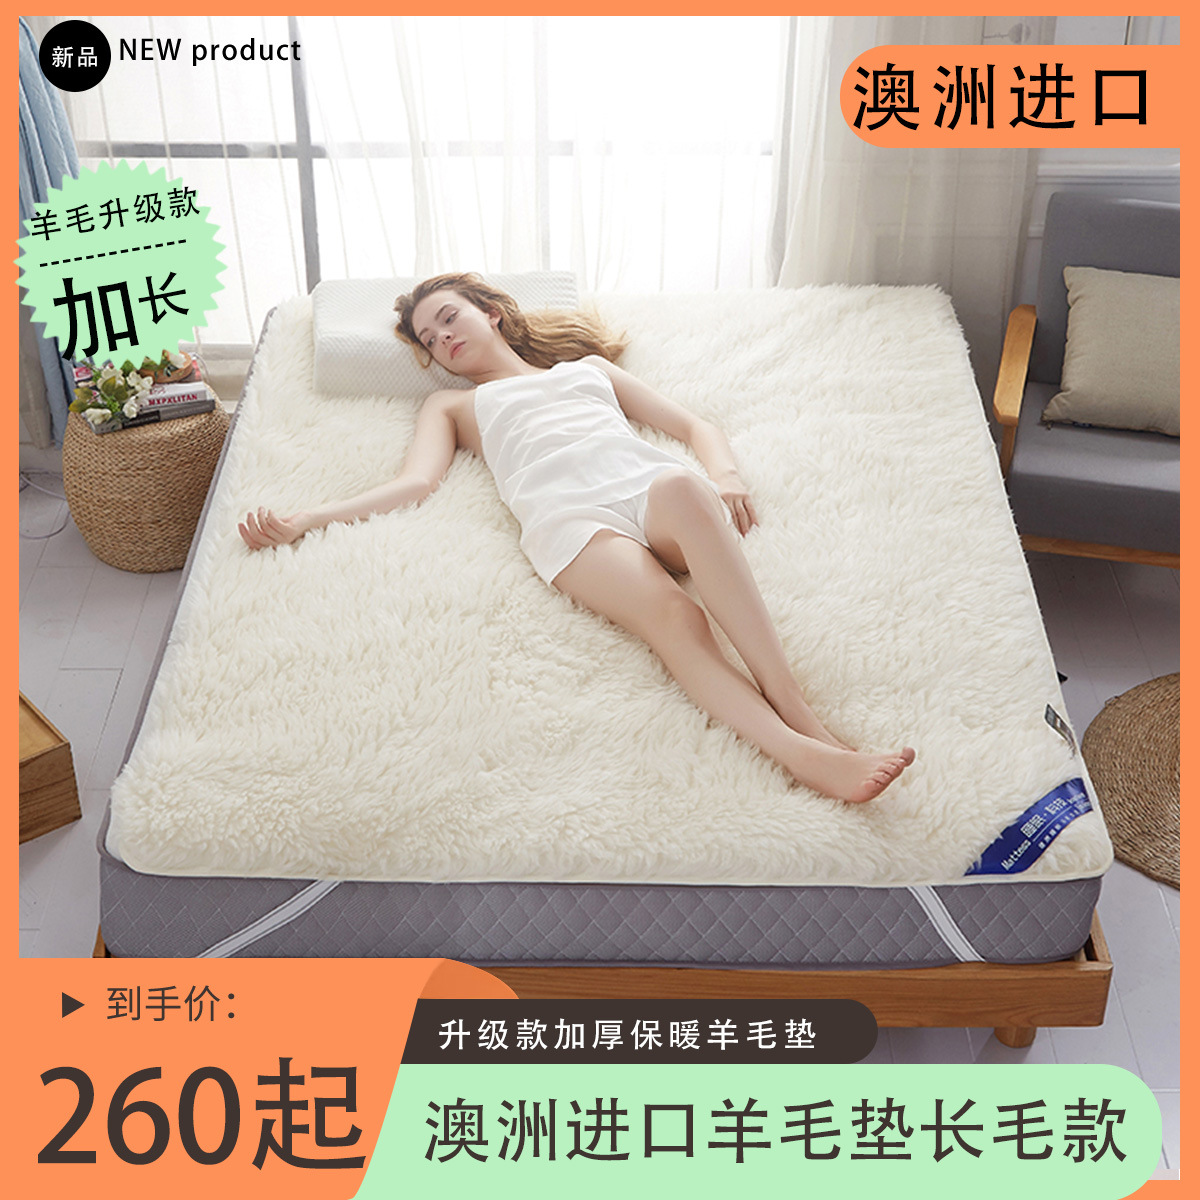 羊毛床垫澳洲长毛纯羊毛床垫加厚保暖家用羊毛垫-长毛款